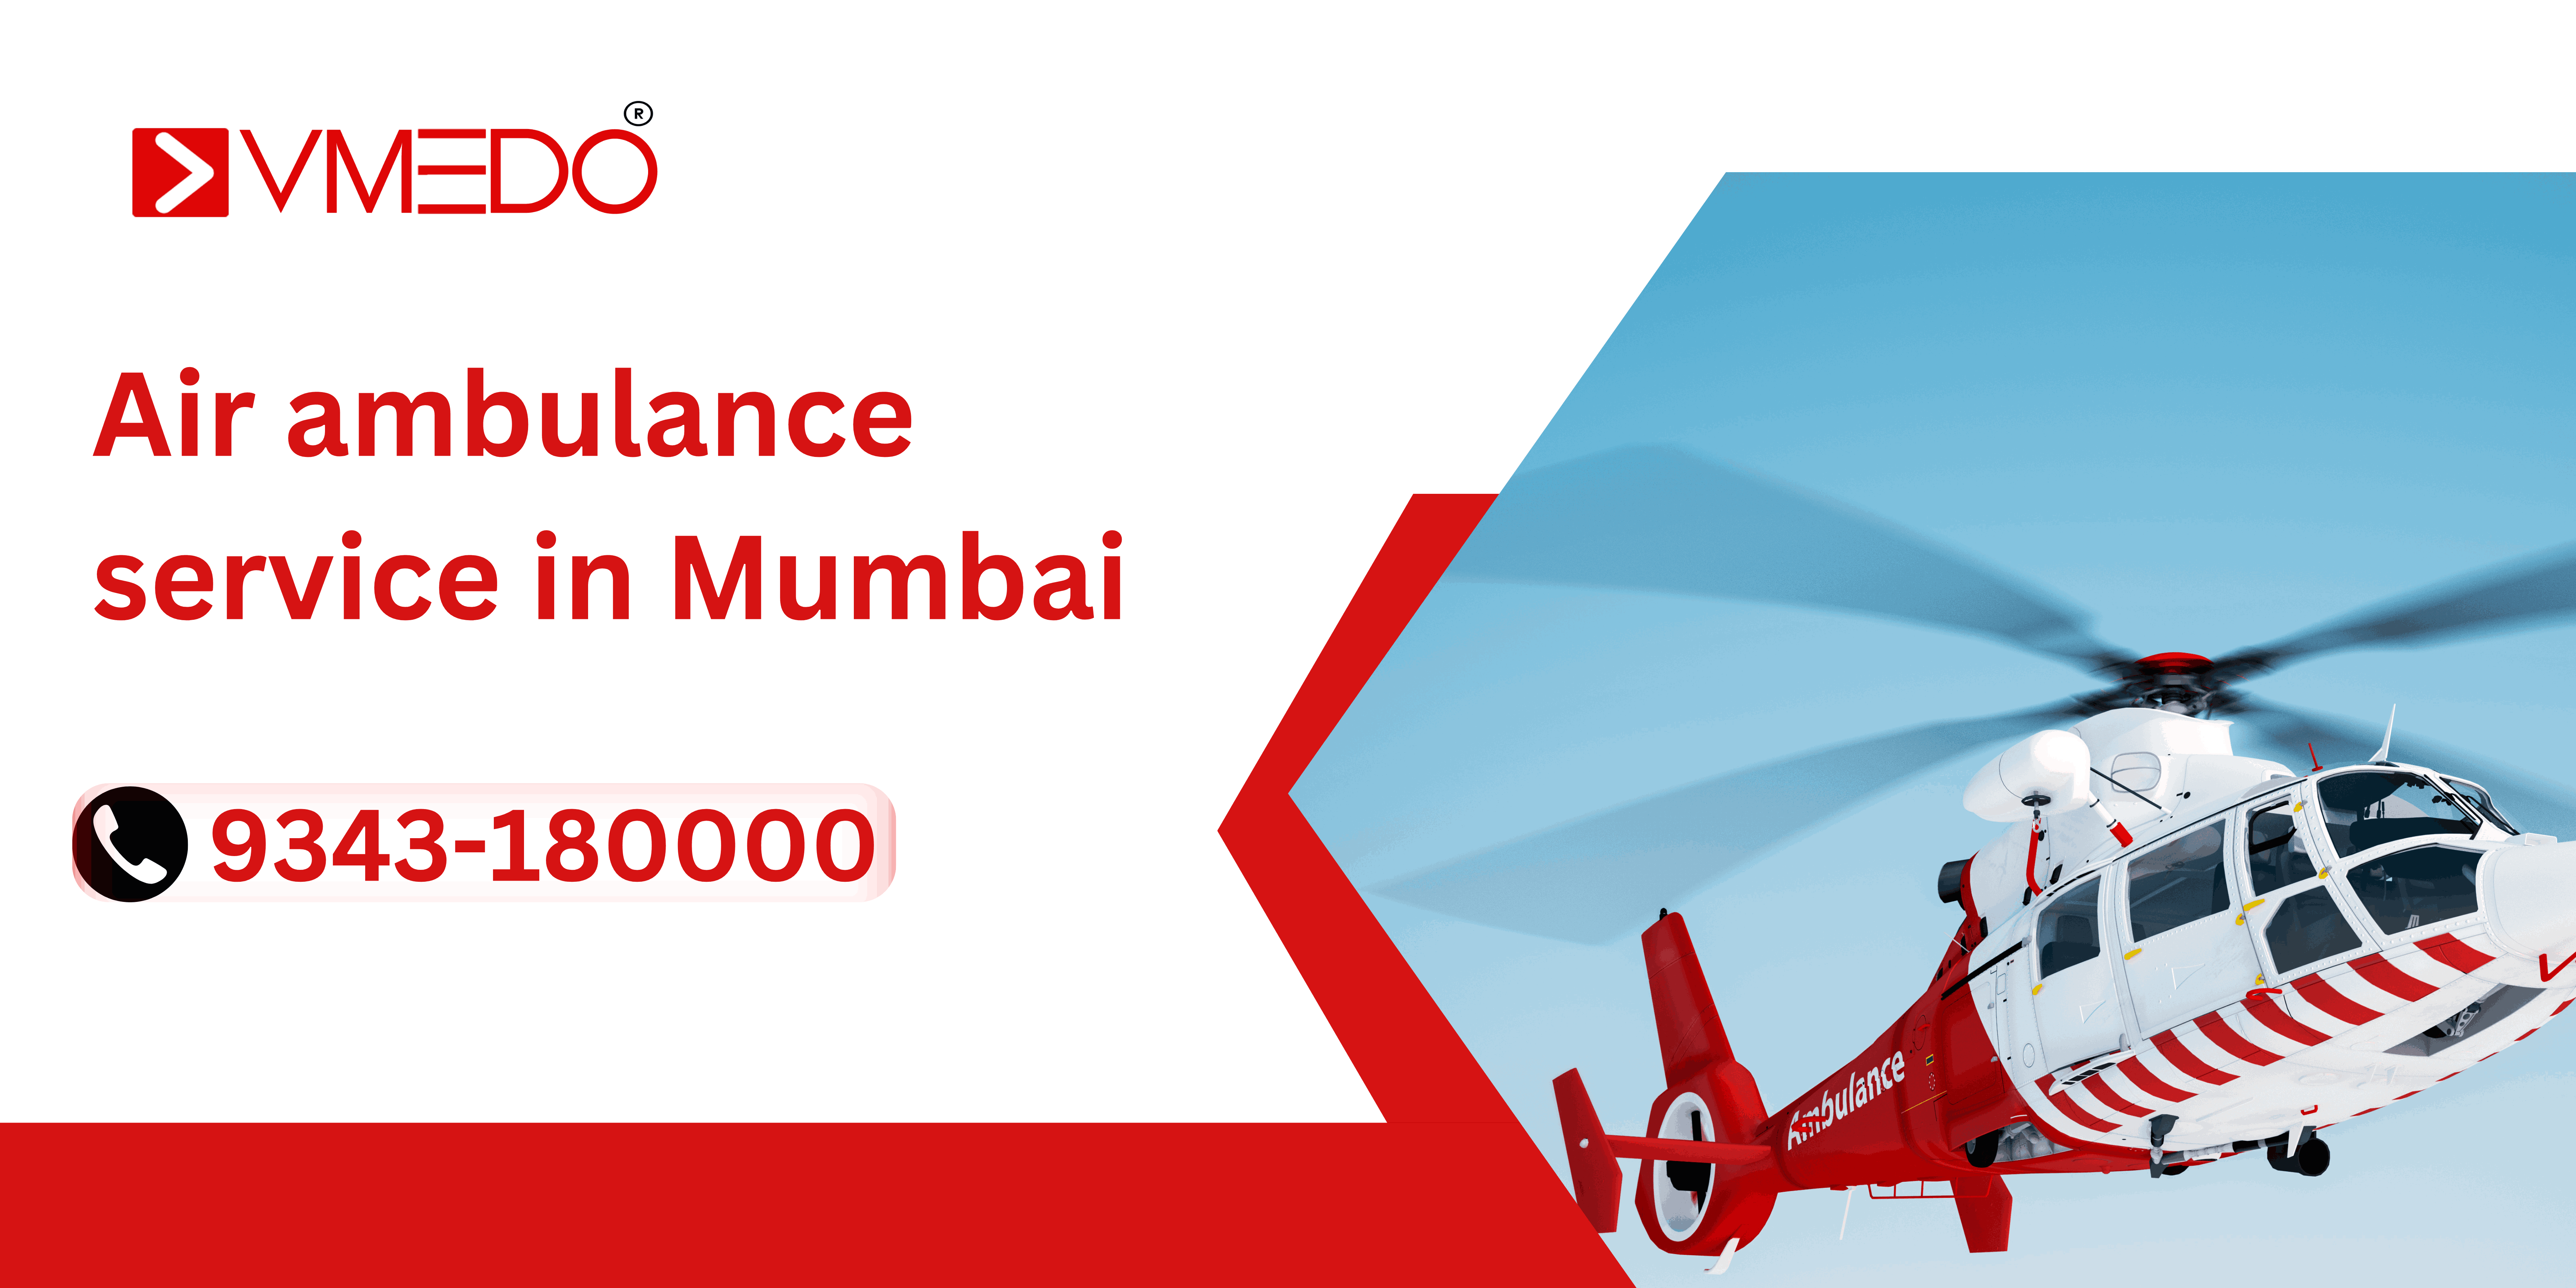 Air ambulance service in Mumbai